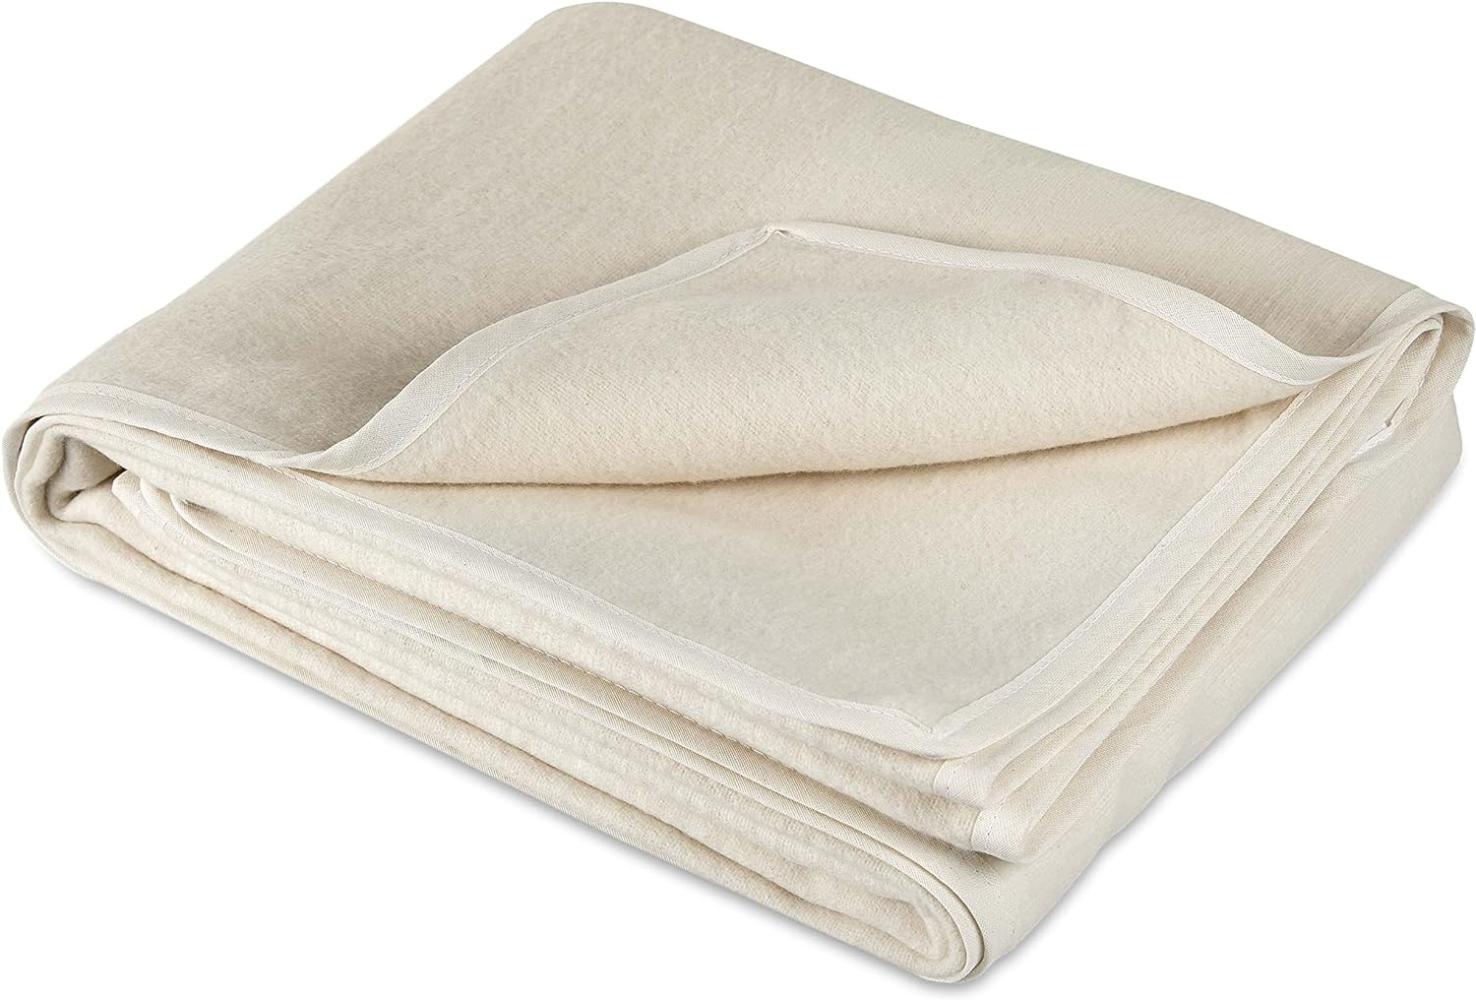 Traumhaft gut schlafen – Molton-Matratzenauflage aus 100% Baumwolle : 100 x 200 cm Bild 1